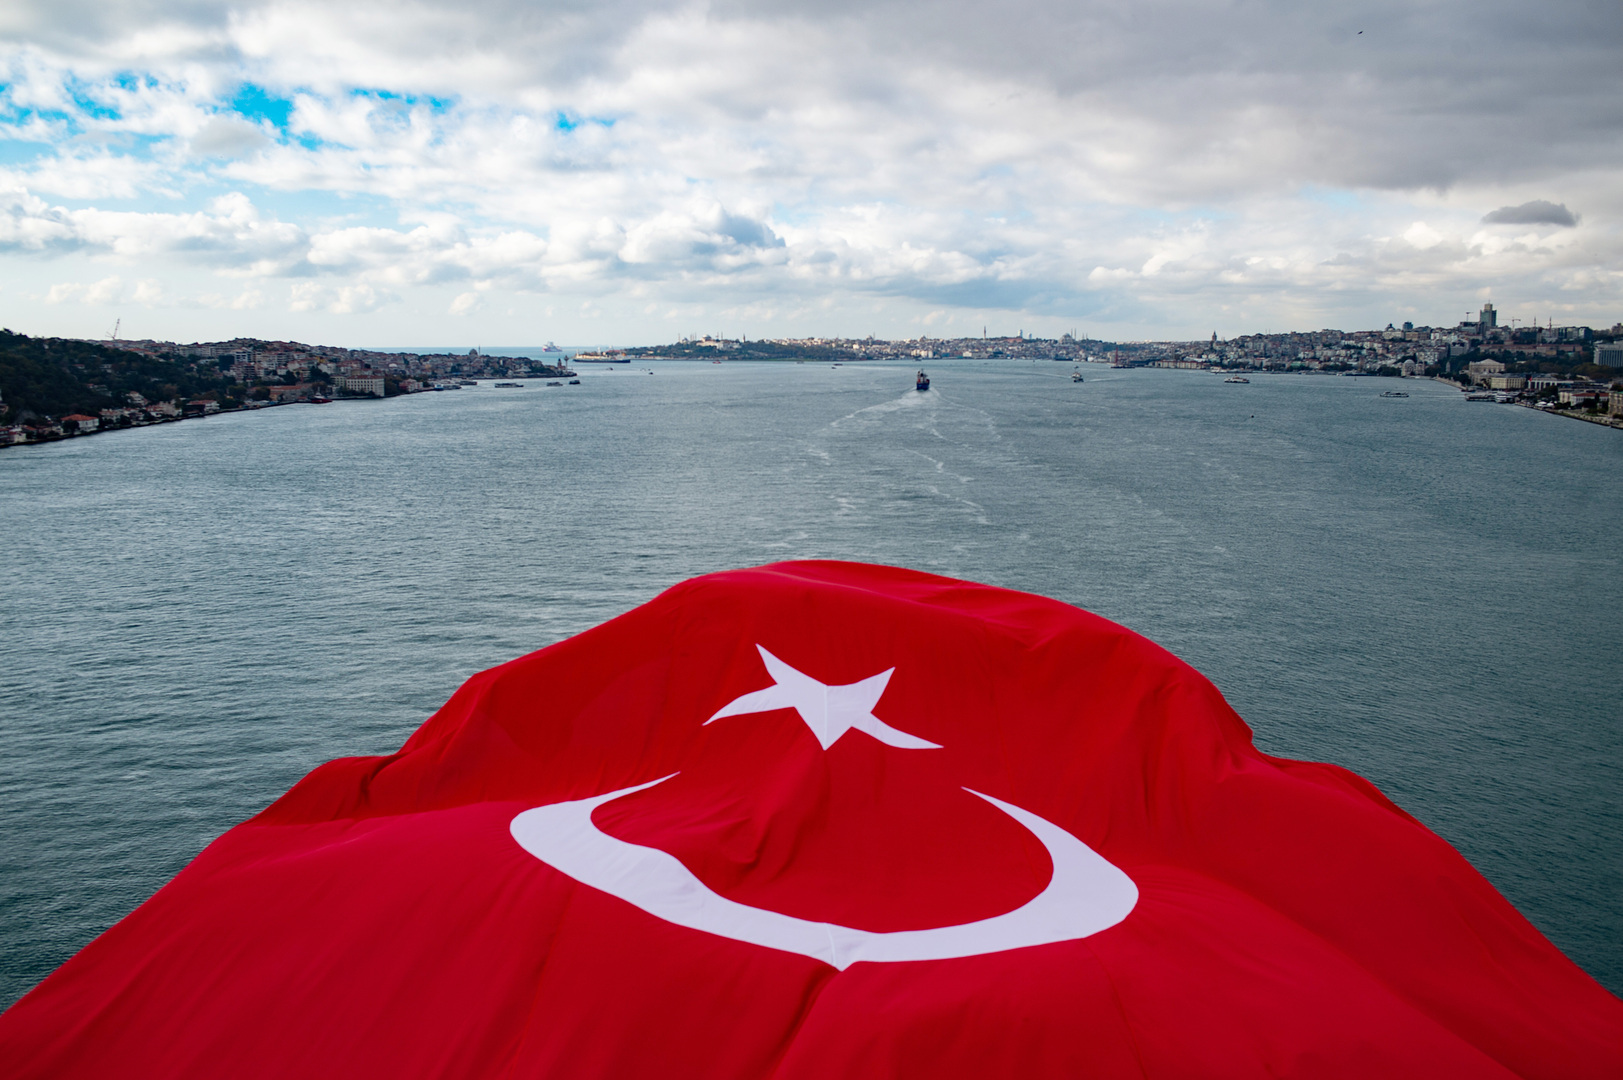 تركيا: حملة منددة بالتحرش تعصف بالأوساط الأدبية في البلاد